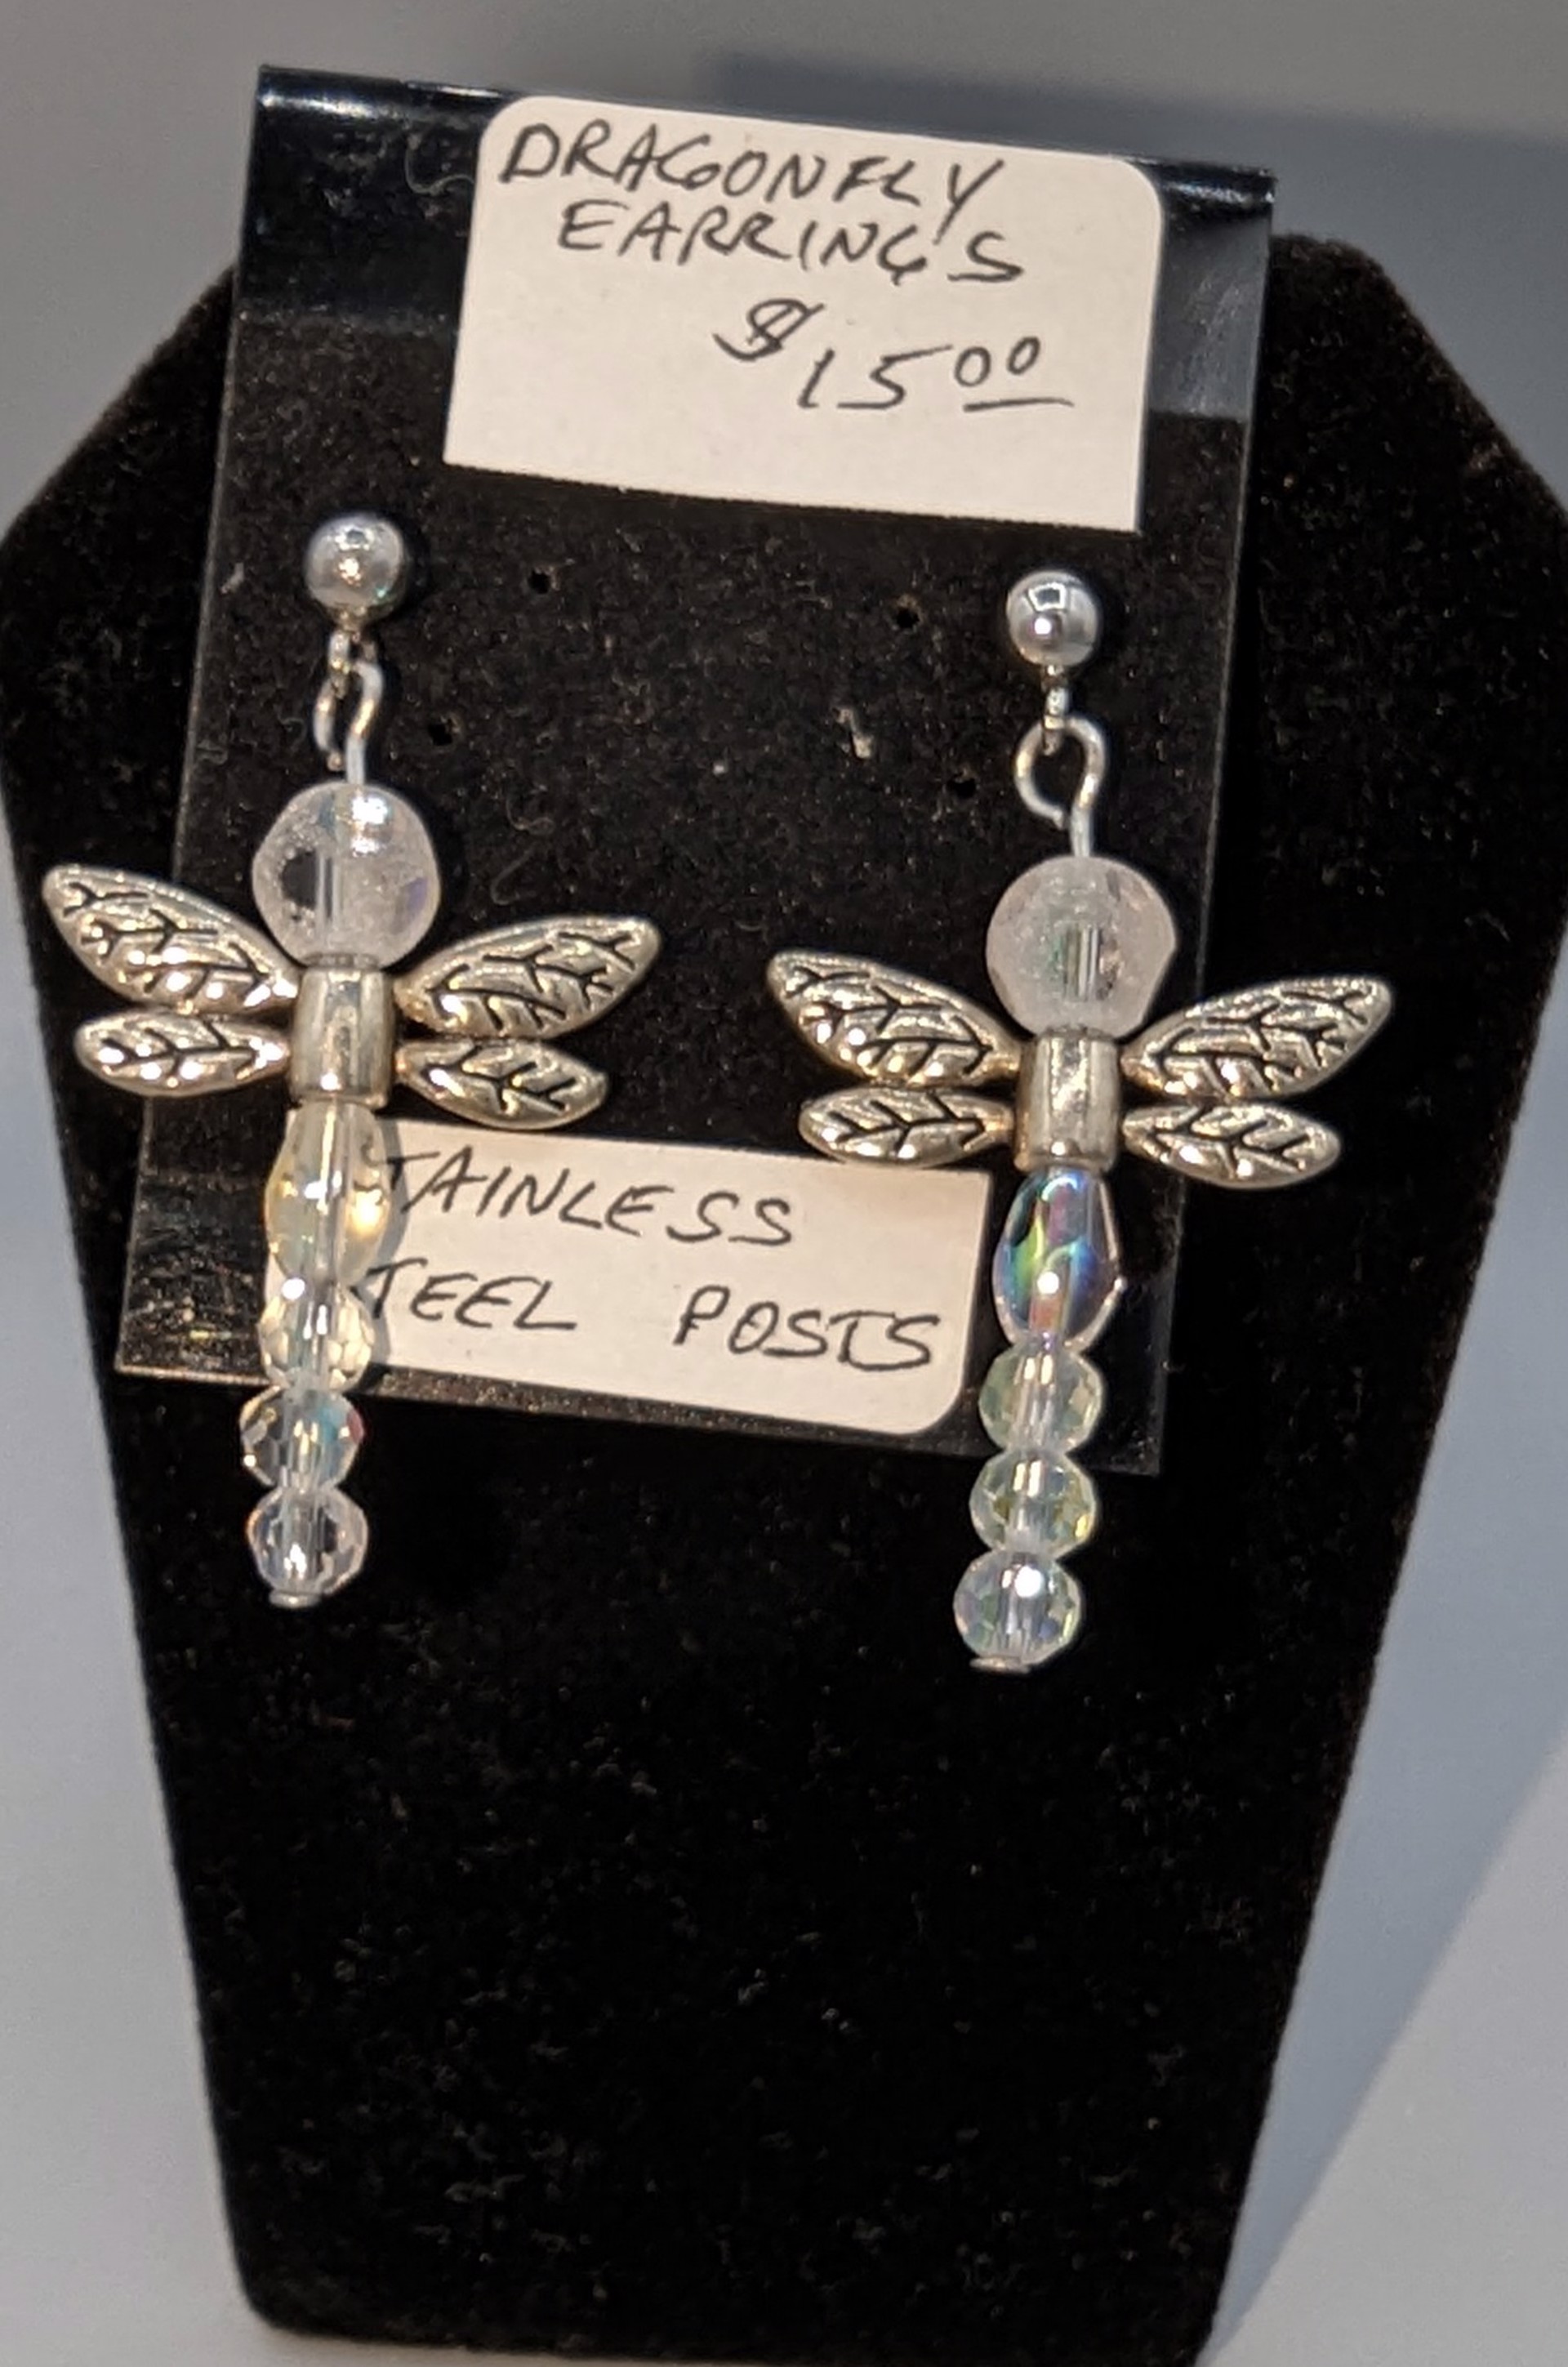 Dragonfly Earrings by Betty Binder